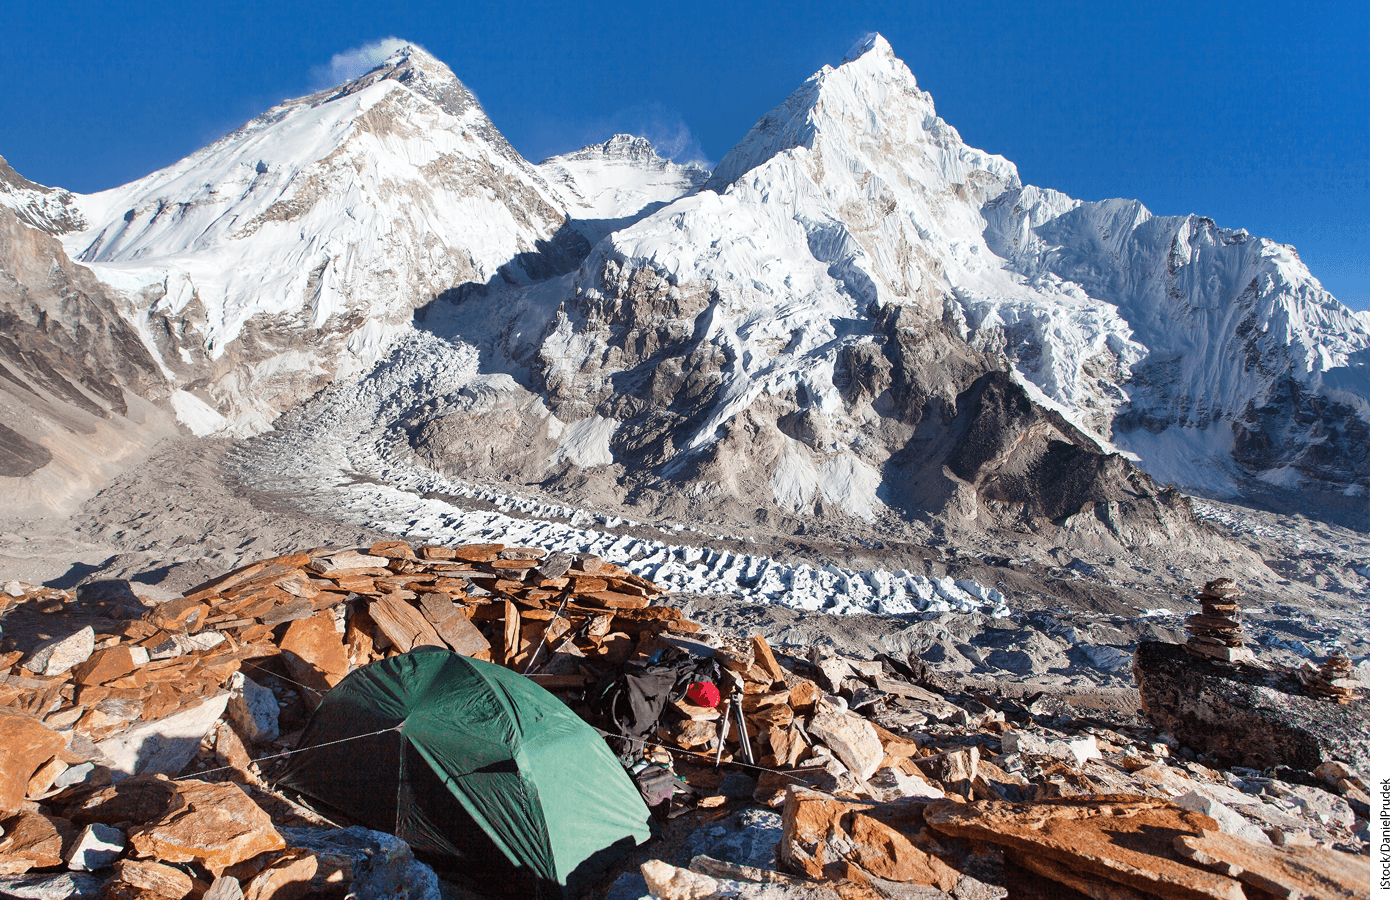 Photo of basecamp at Mount Everest